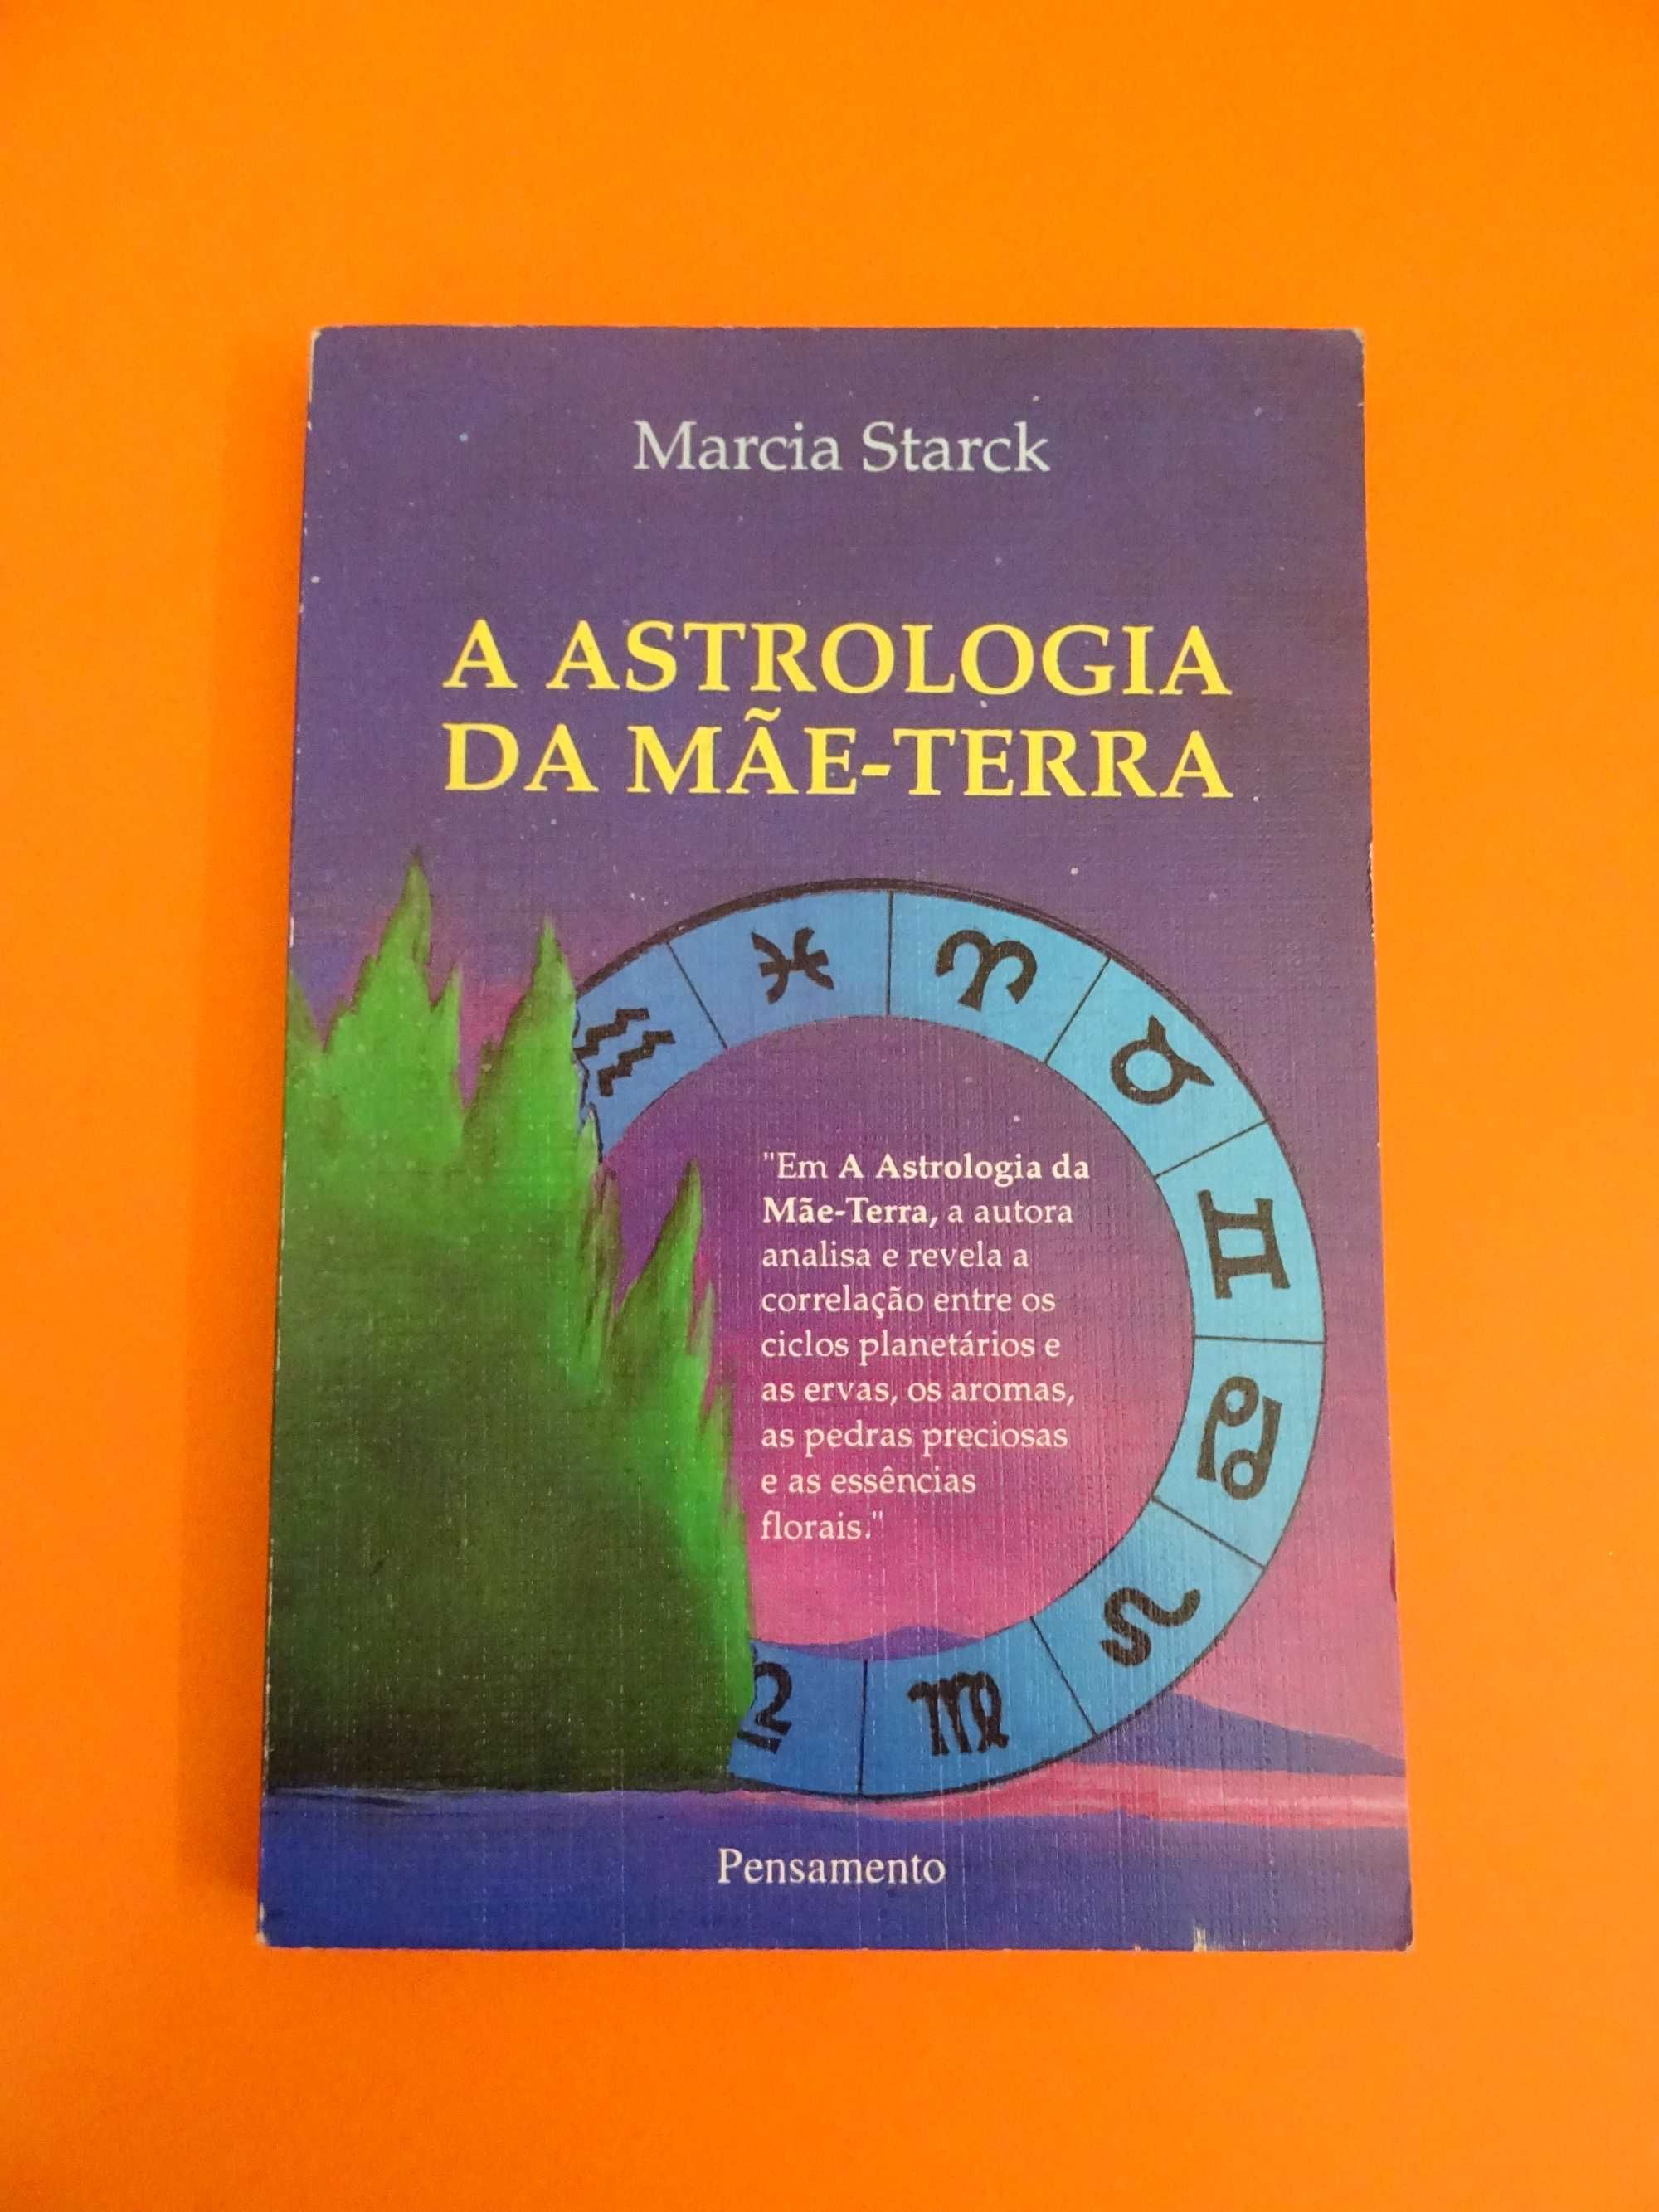 A Astrologia da Mãe-Terra - Marcia Starck